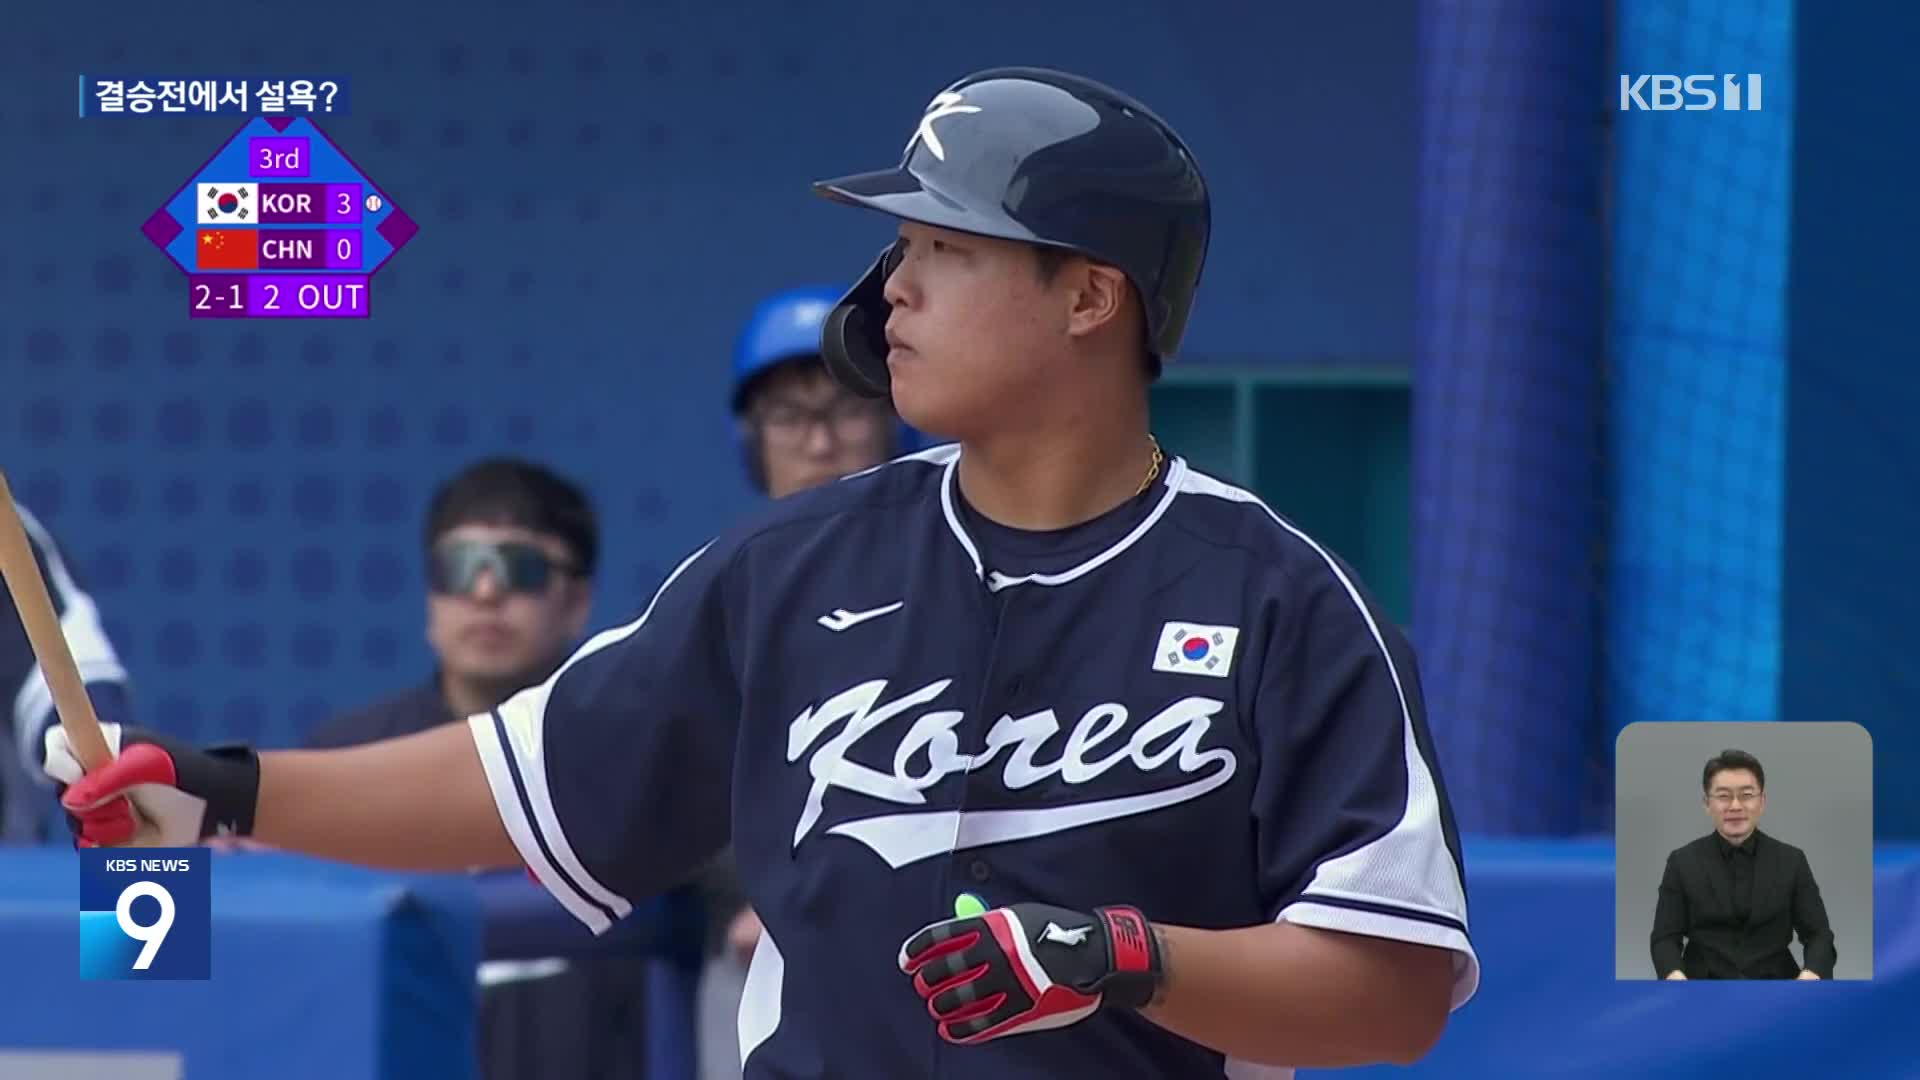 마음 고생 훌훌, 해결사 강백호 ‘한국 야구 결승 진출’